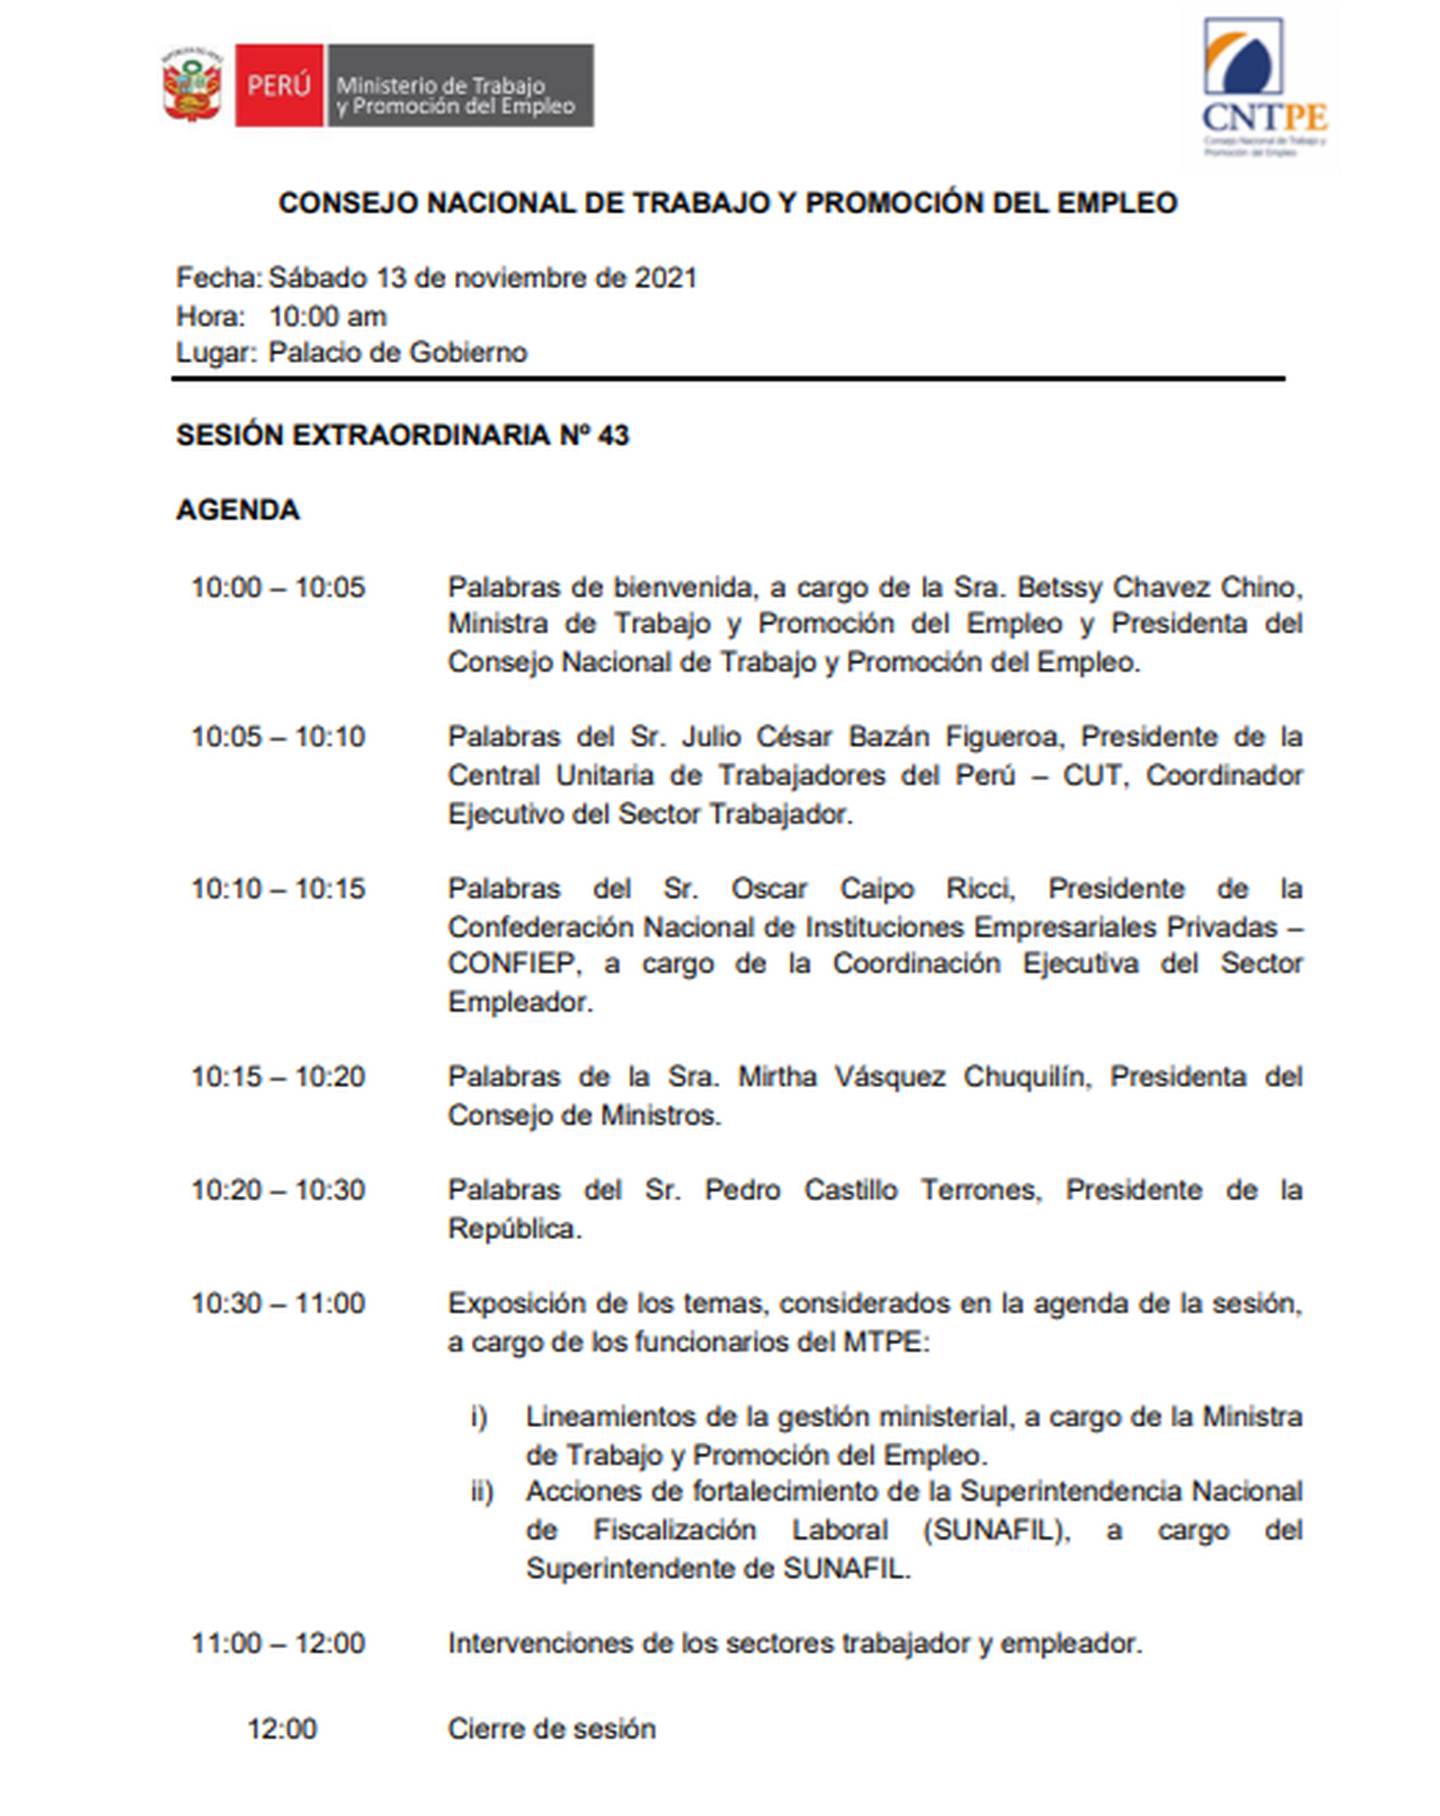 Agenda de la sesión extraordinaria °43 del Consejo Nacional de Trabajo que se celebrará en Palacio de Gobierno.dfd